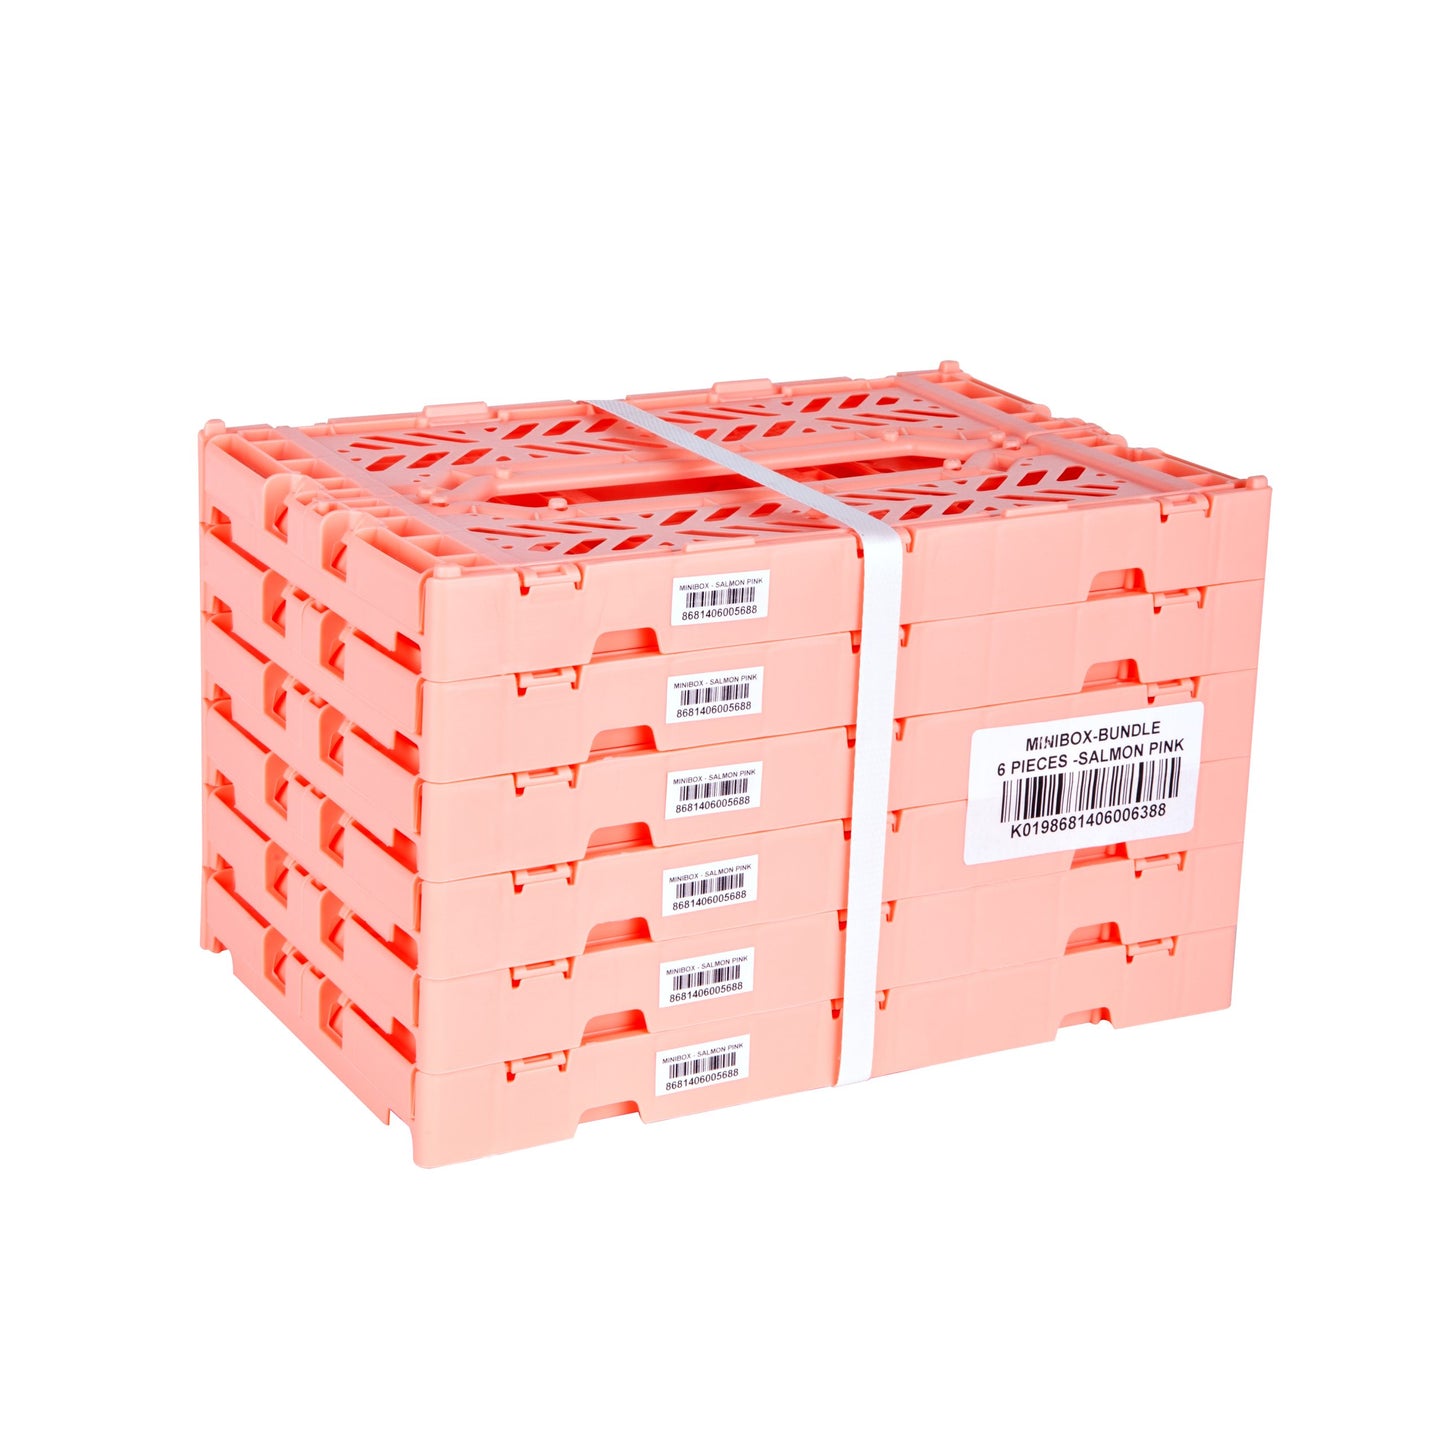 
                  
                    Mini Salmon Pink Folding Crate
                  
                